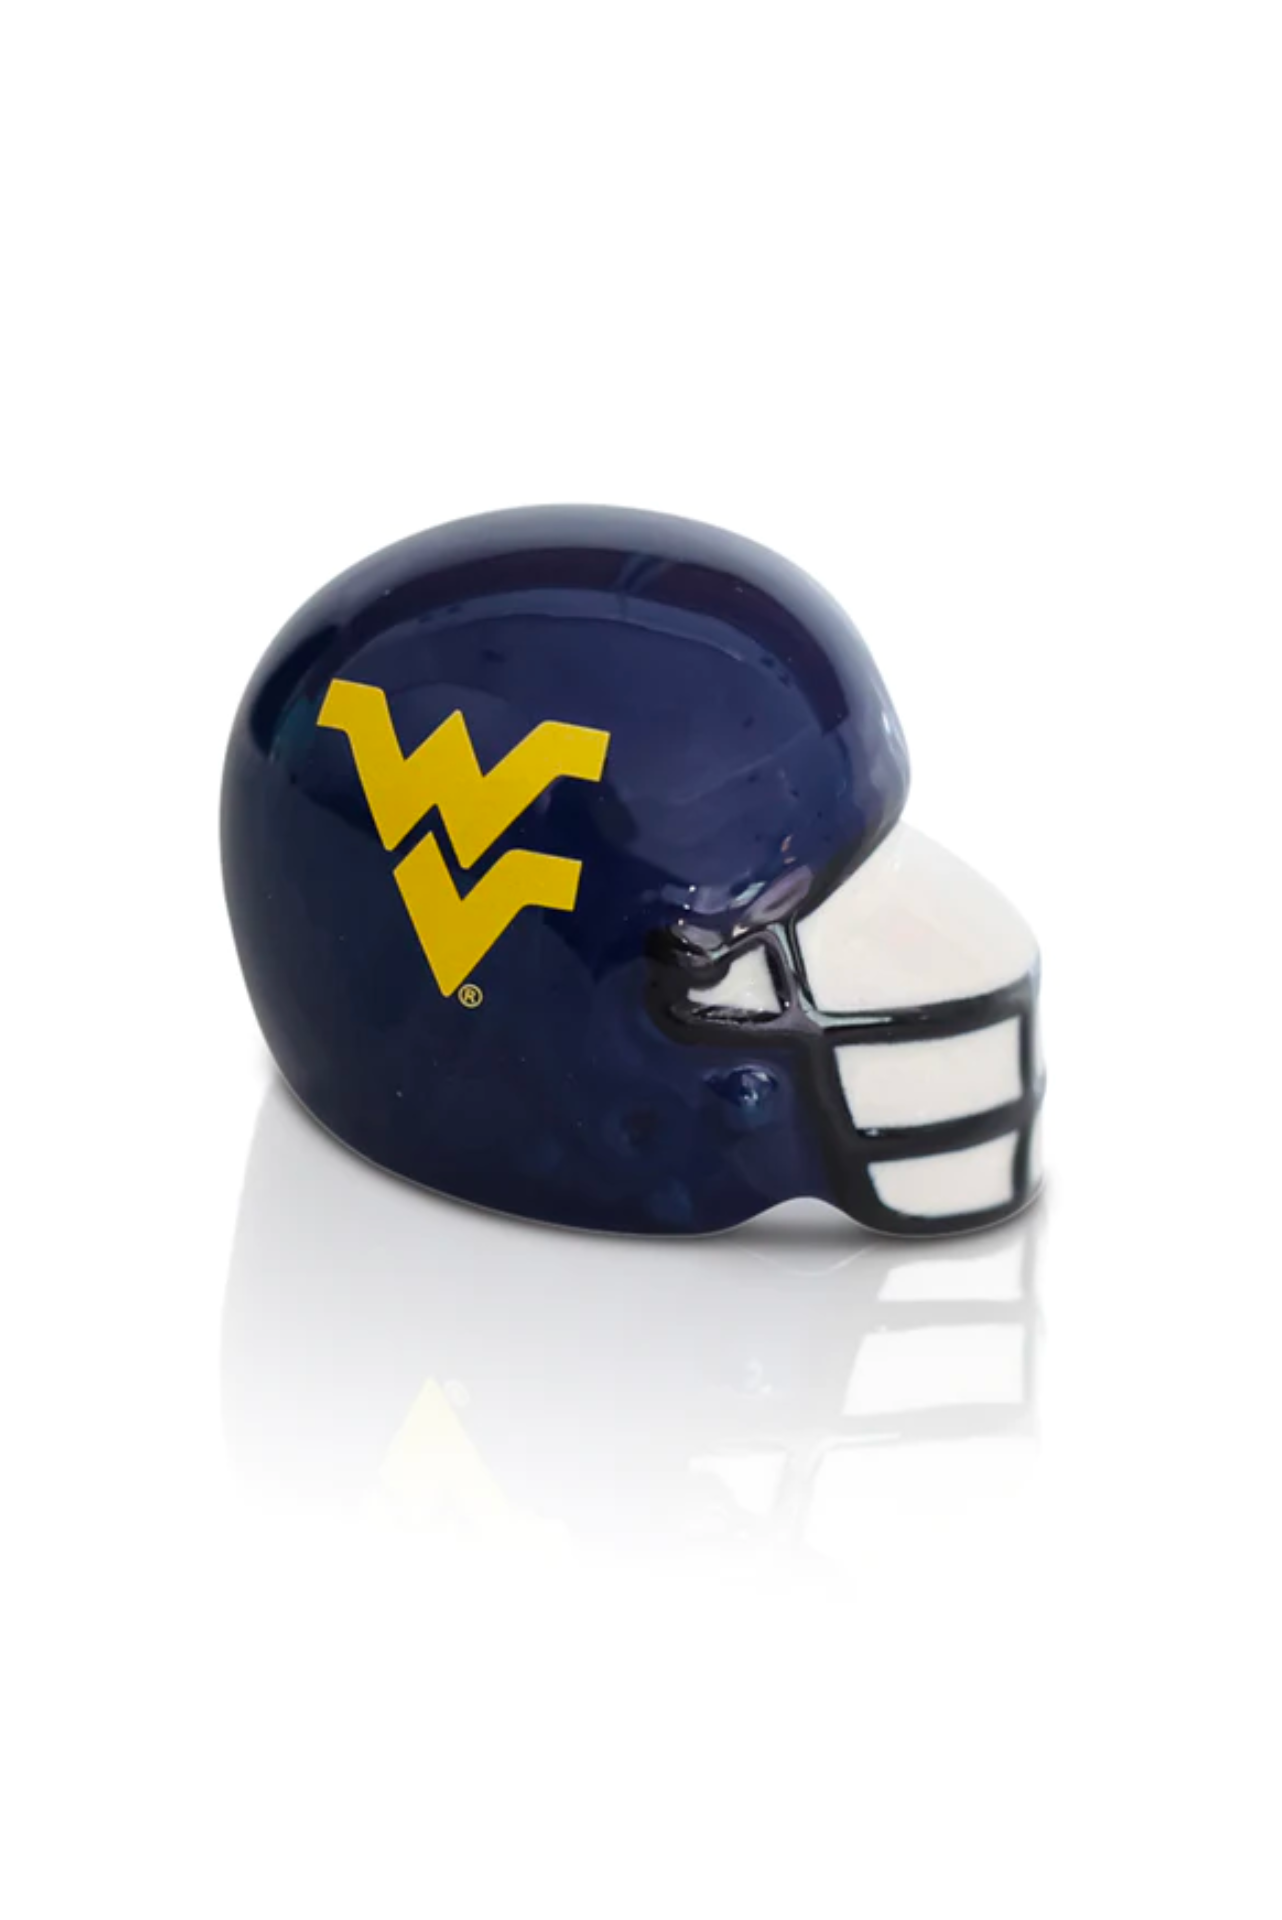 West Virginia Helmet (A324)